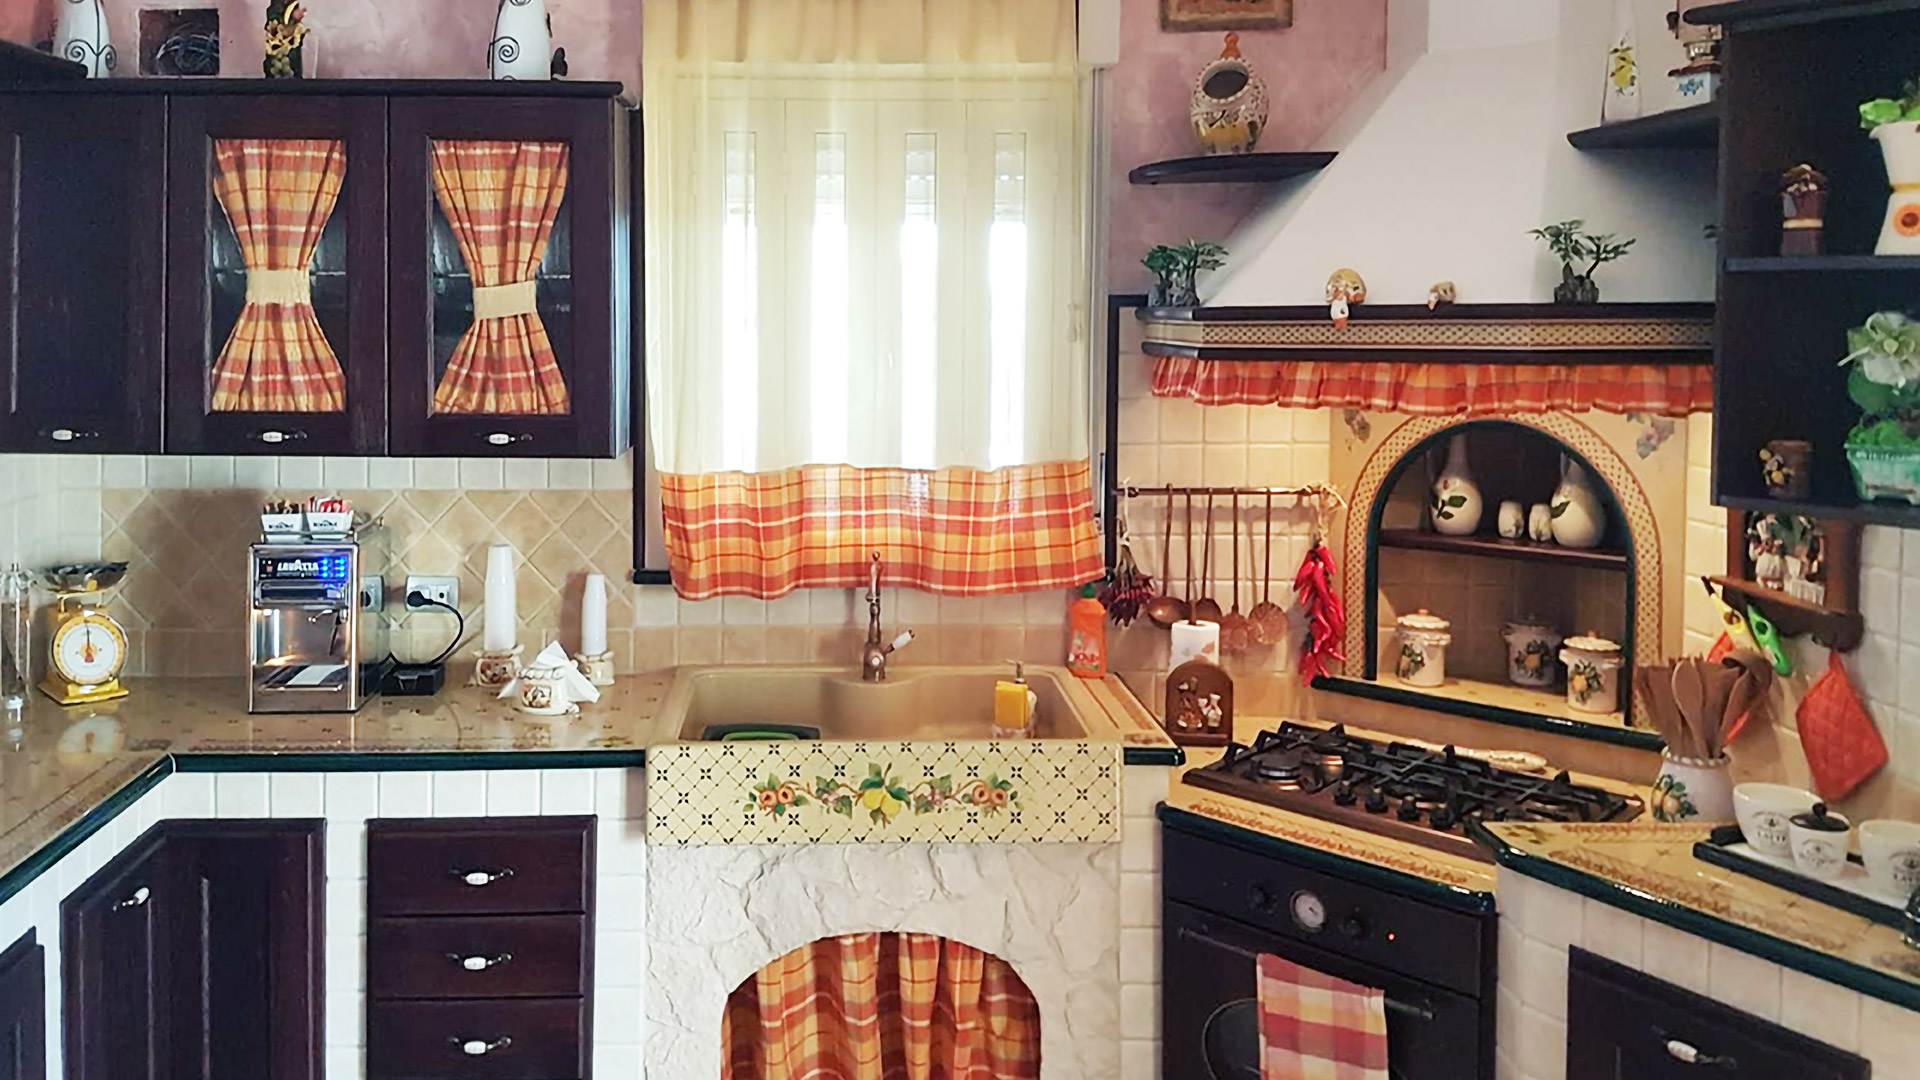 cucina in finta muratura realizzata su progettazione modello Roma